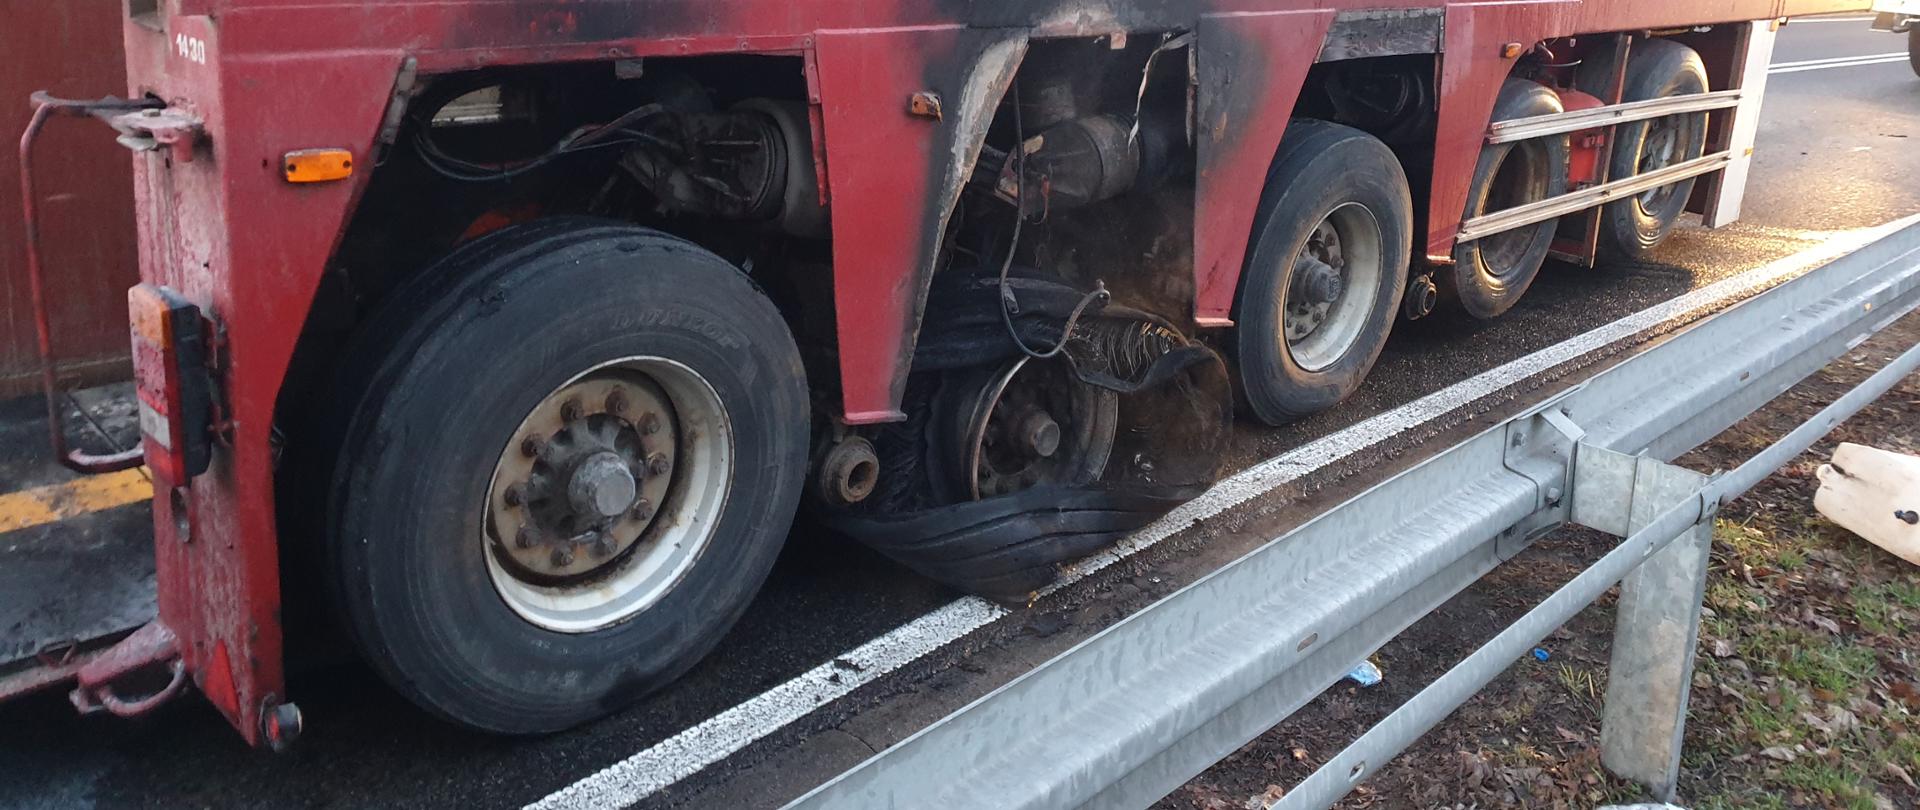 Na zdjęciu znajduje się załadowana naczepa samochodu ciężarowego do przewozu ładunków specjalnych, która stoi na drodze. Pożarem objęte zostało podwozie naczepy wraz z ogumieniem.